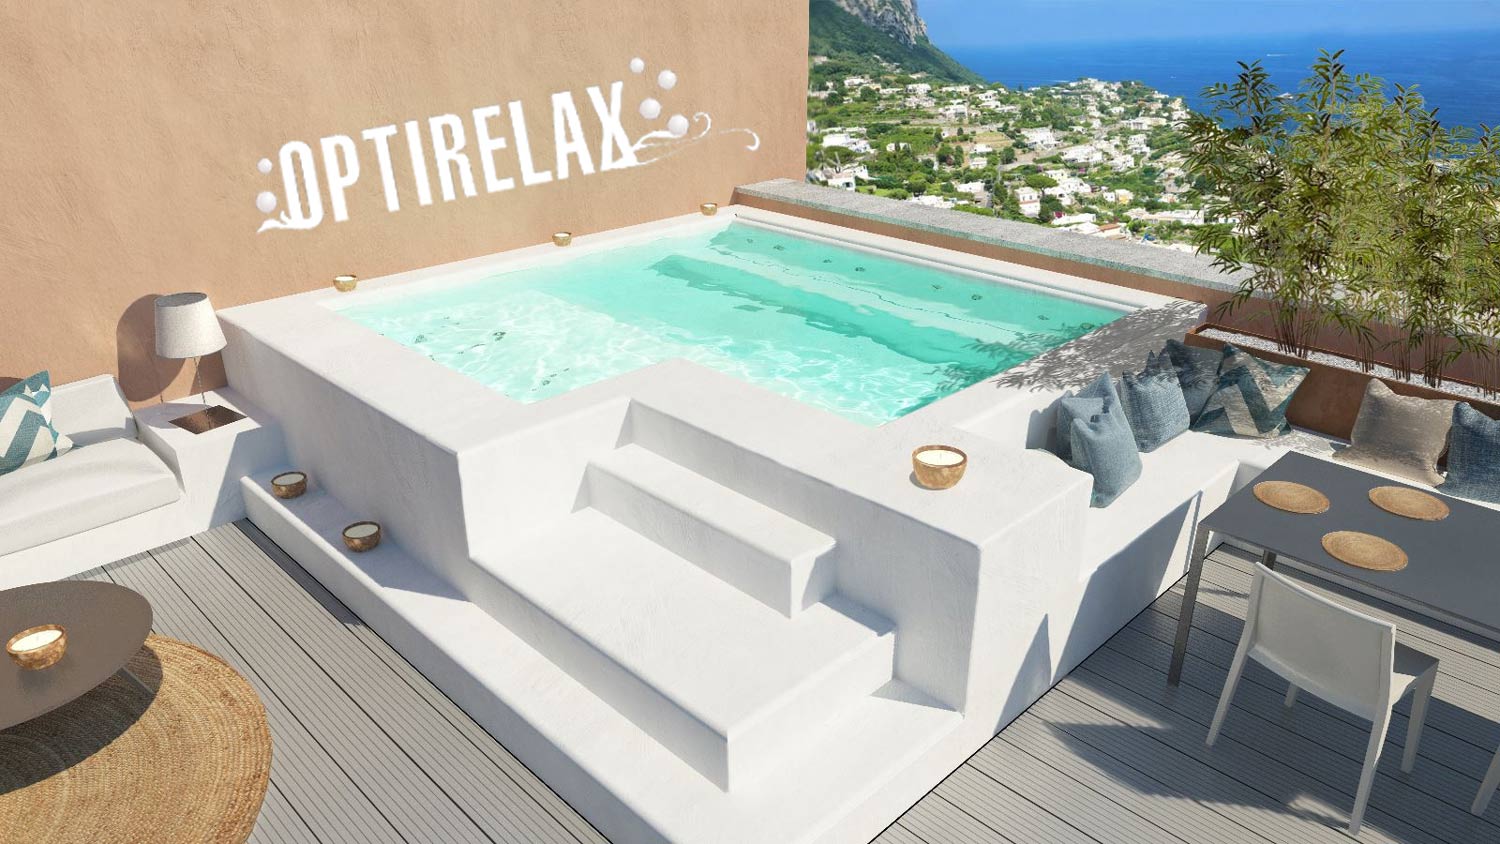 Pool-Terrasse-Luxus-OPTIRELAX-Whirlpool-Pool-2019